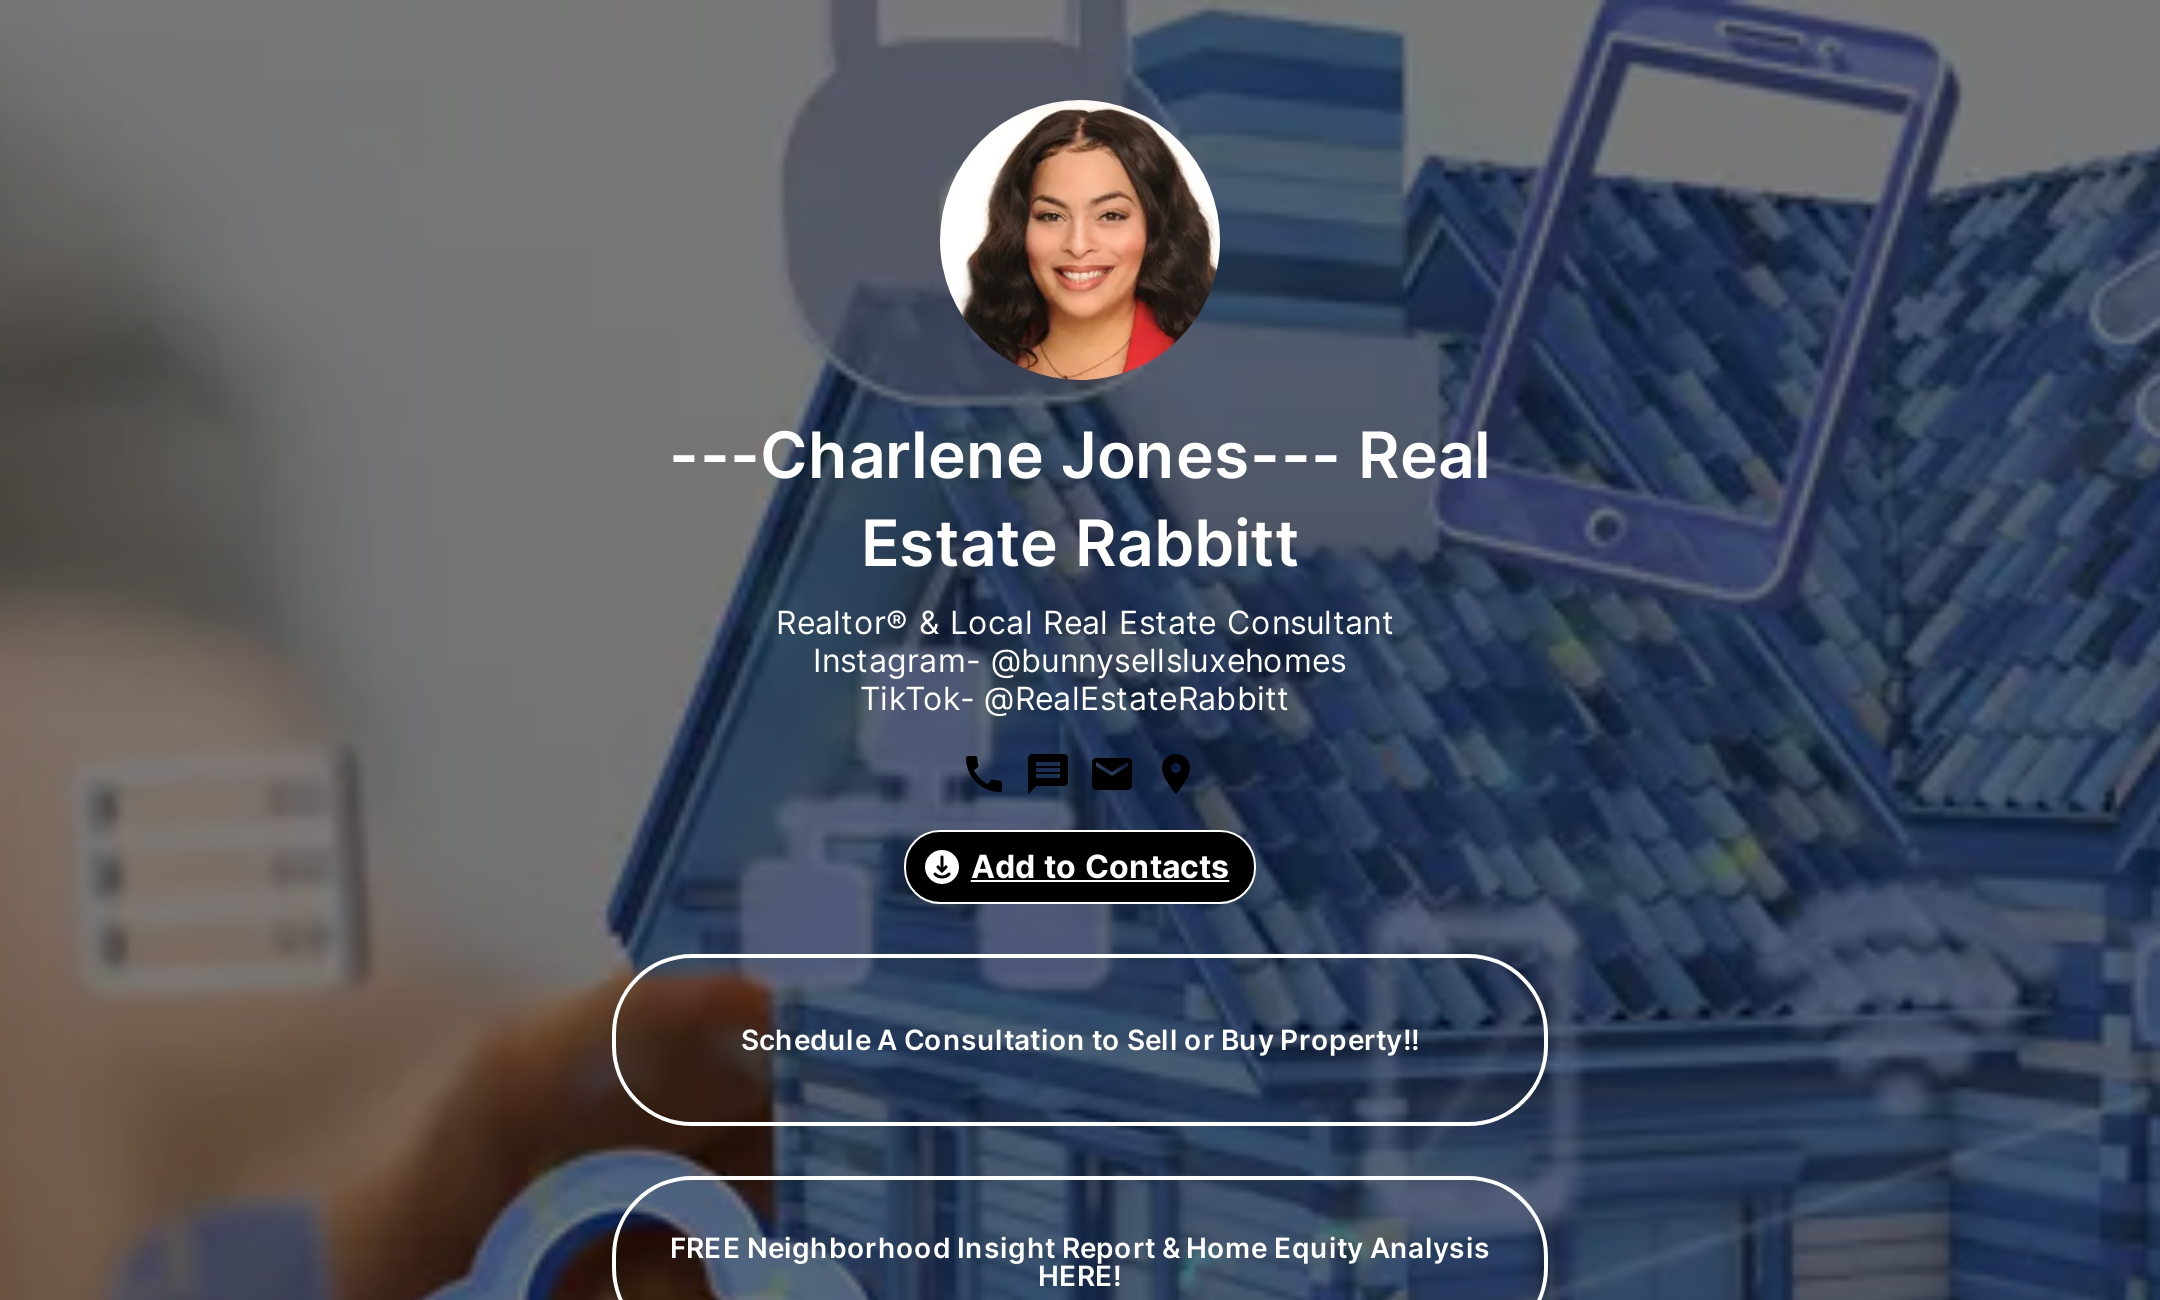 ---Charlene Jones--- Real Estate Rabbitt's Flowpage